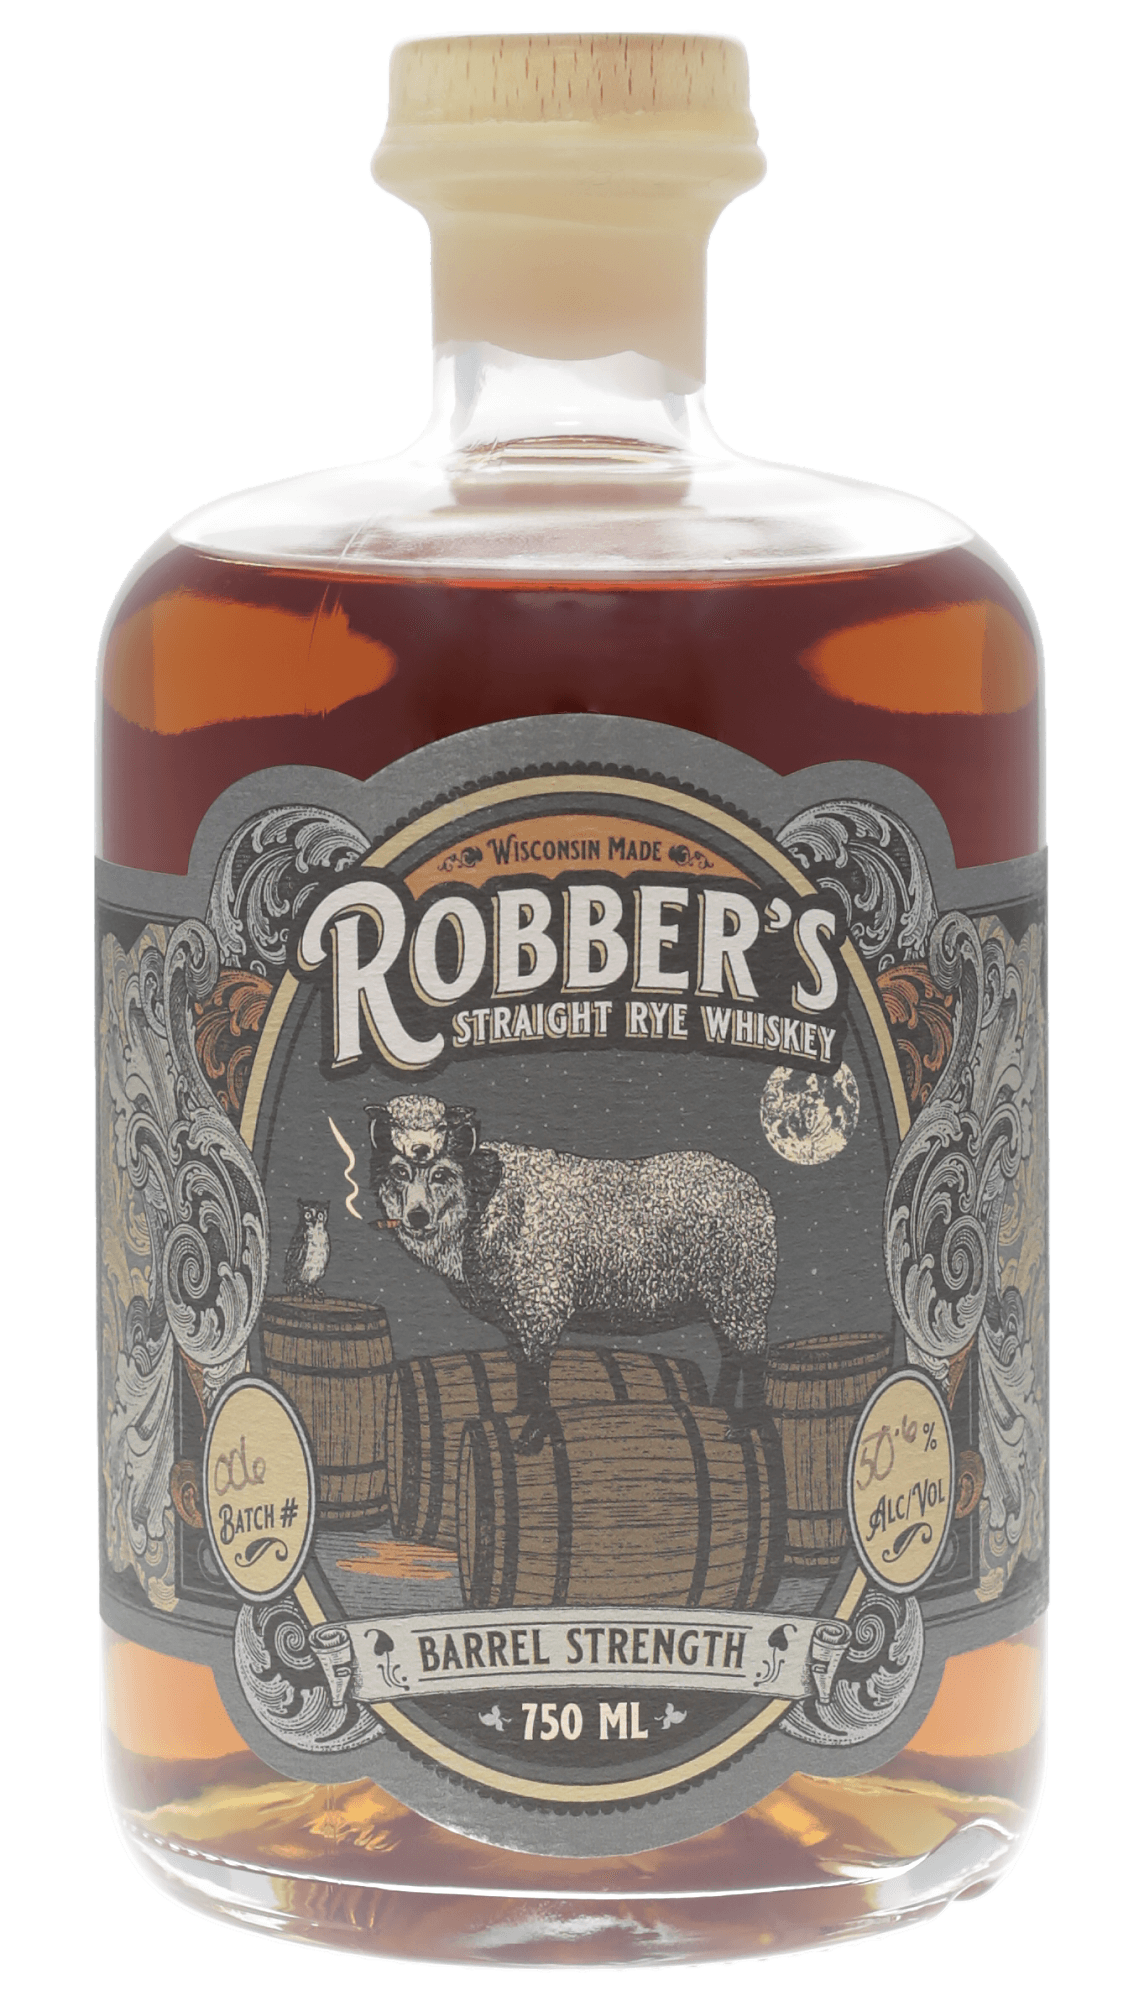 Robber's Straight Rye Whiskey